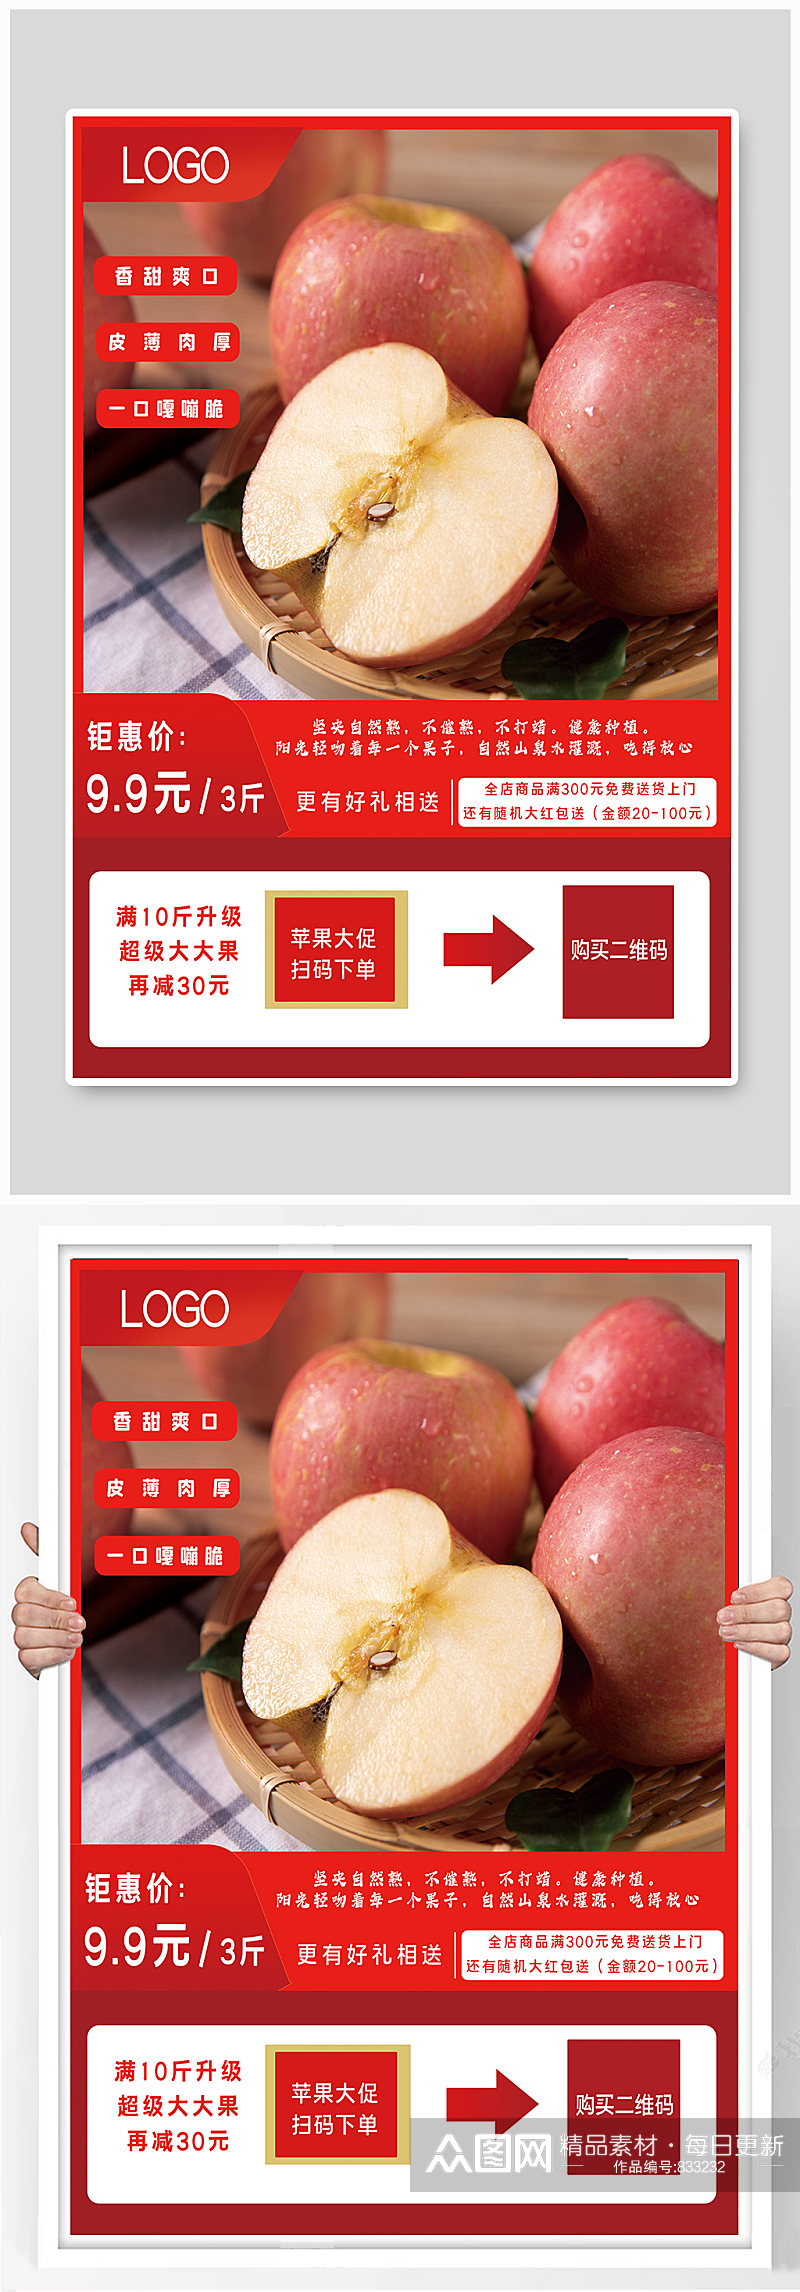 苹果促销节日喜庆活动海报素材